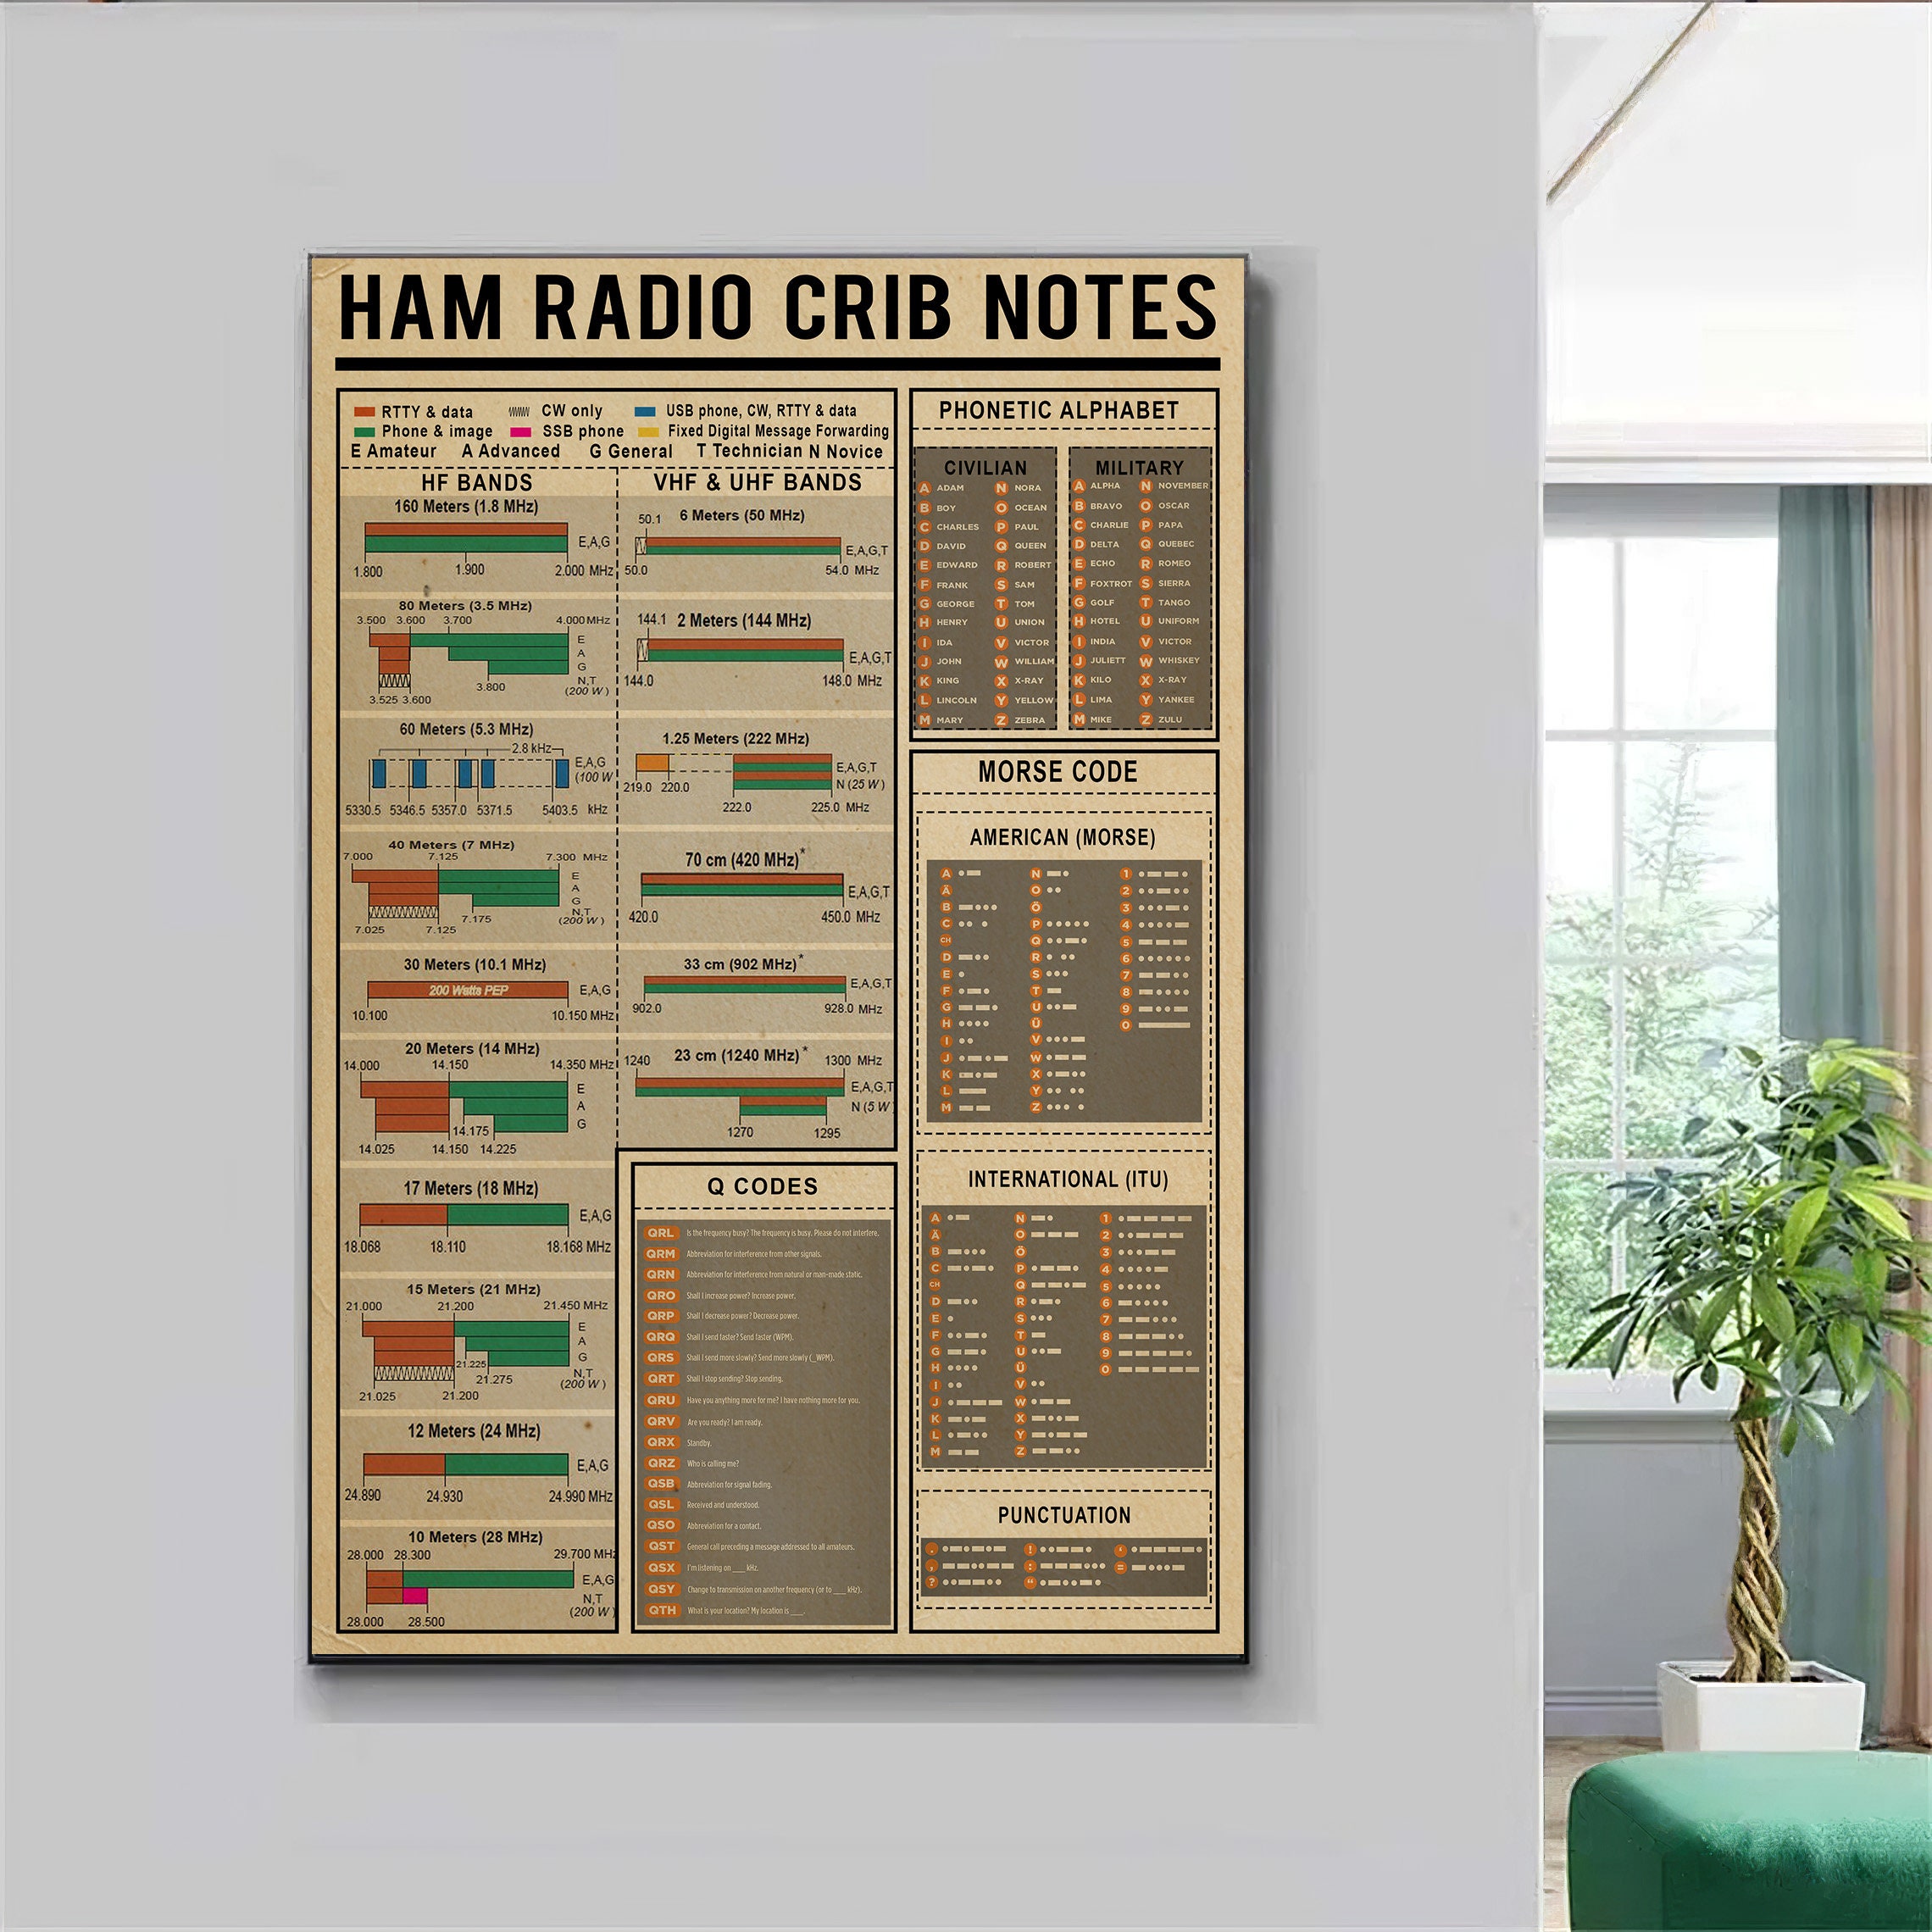 All Ham Radio Crib Notes Amateur Radio Entertainment Portrait picture